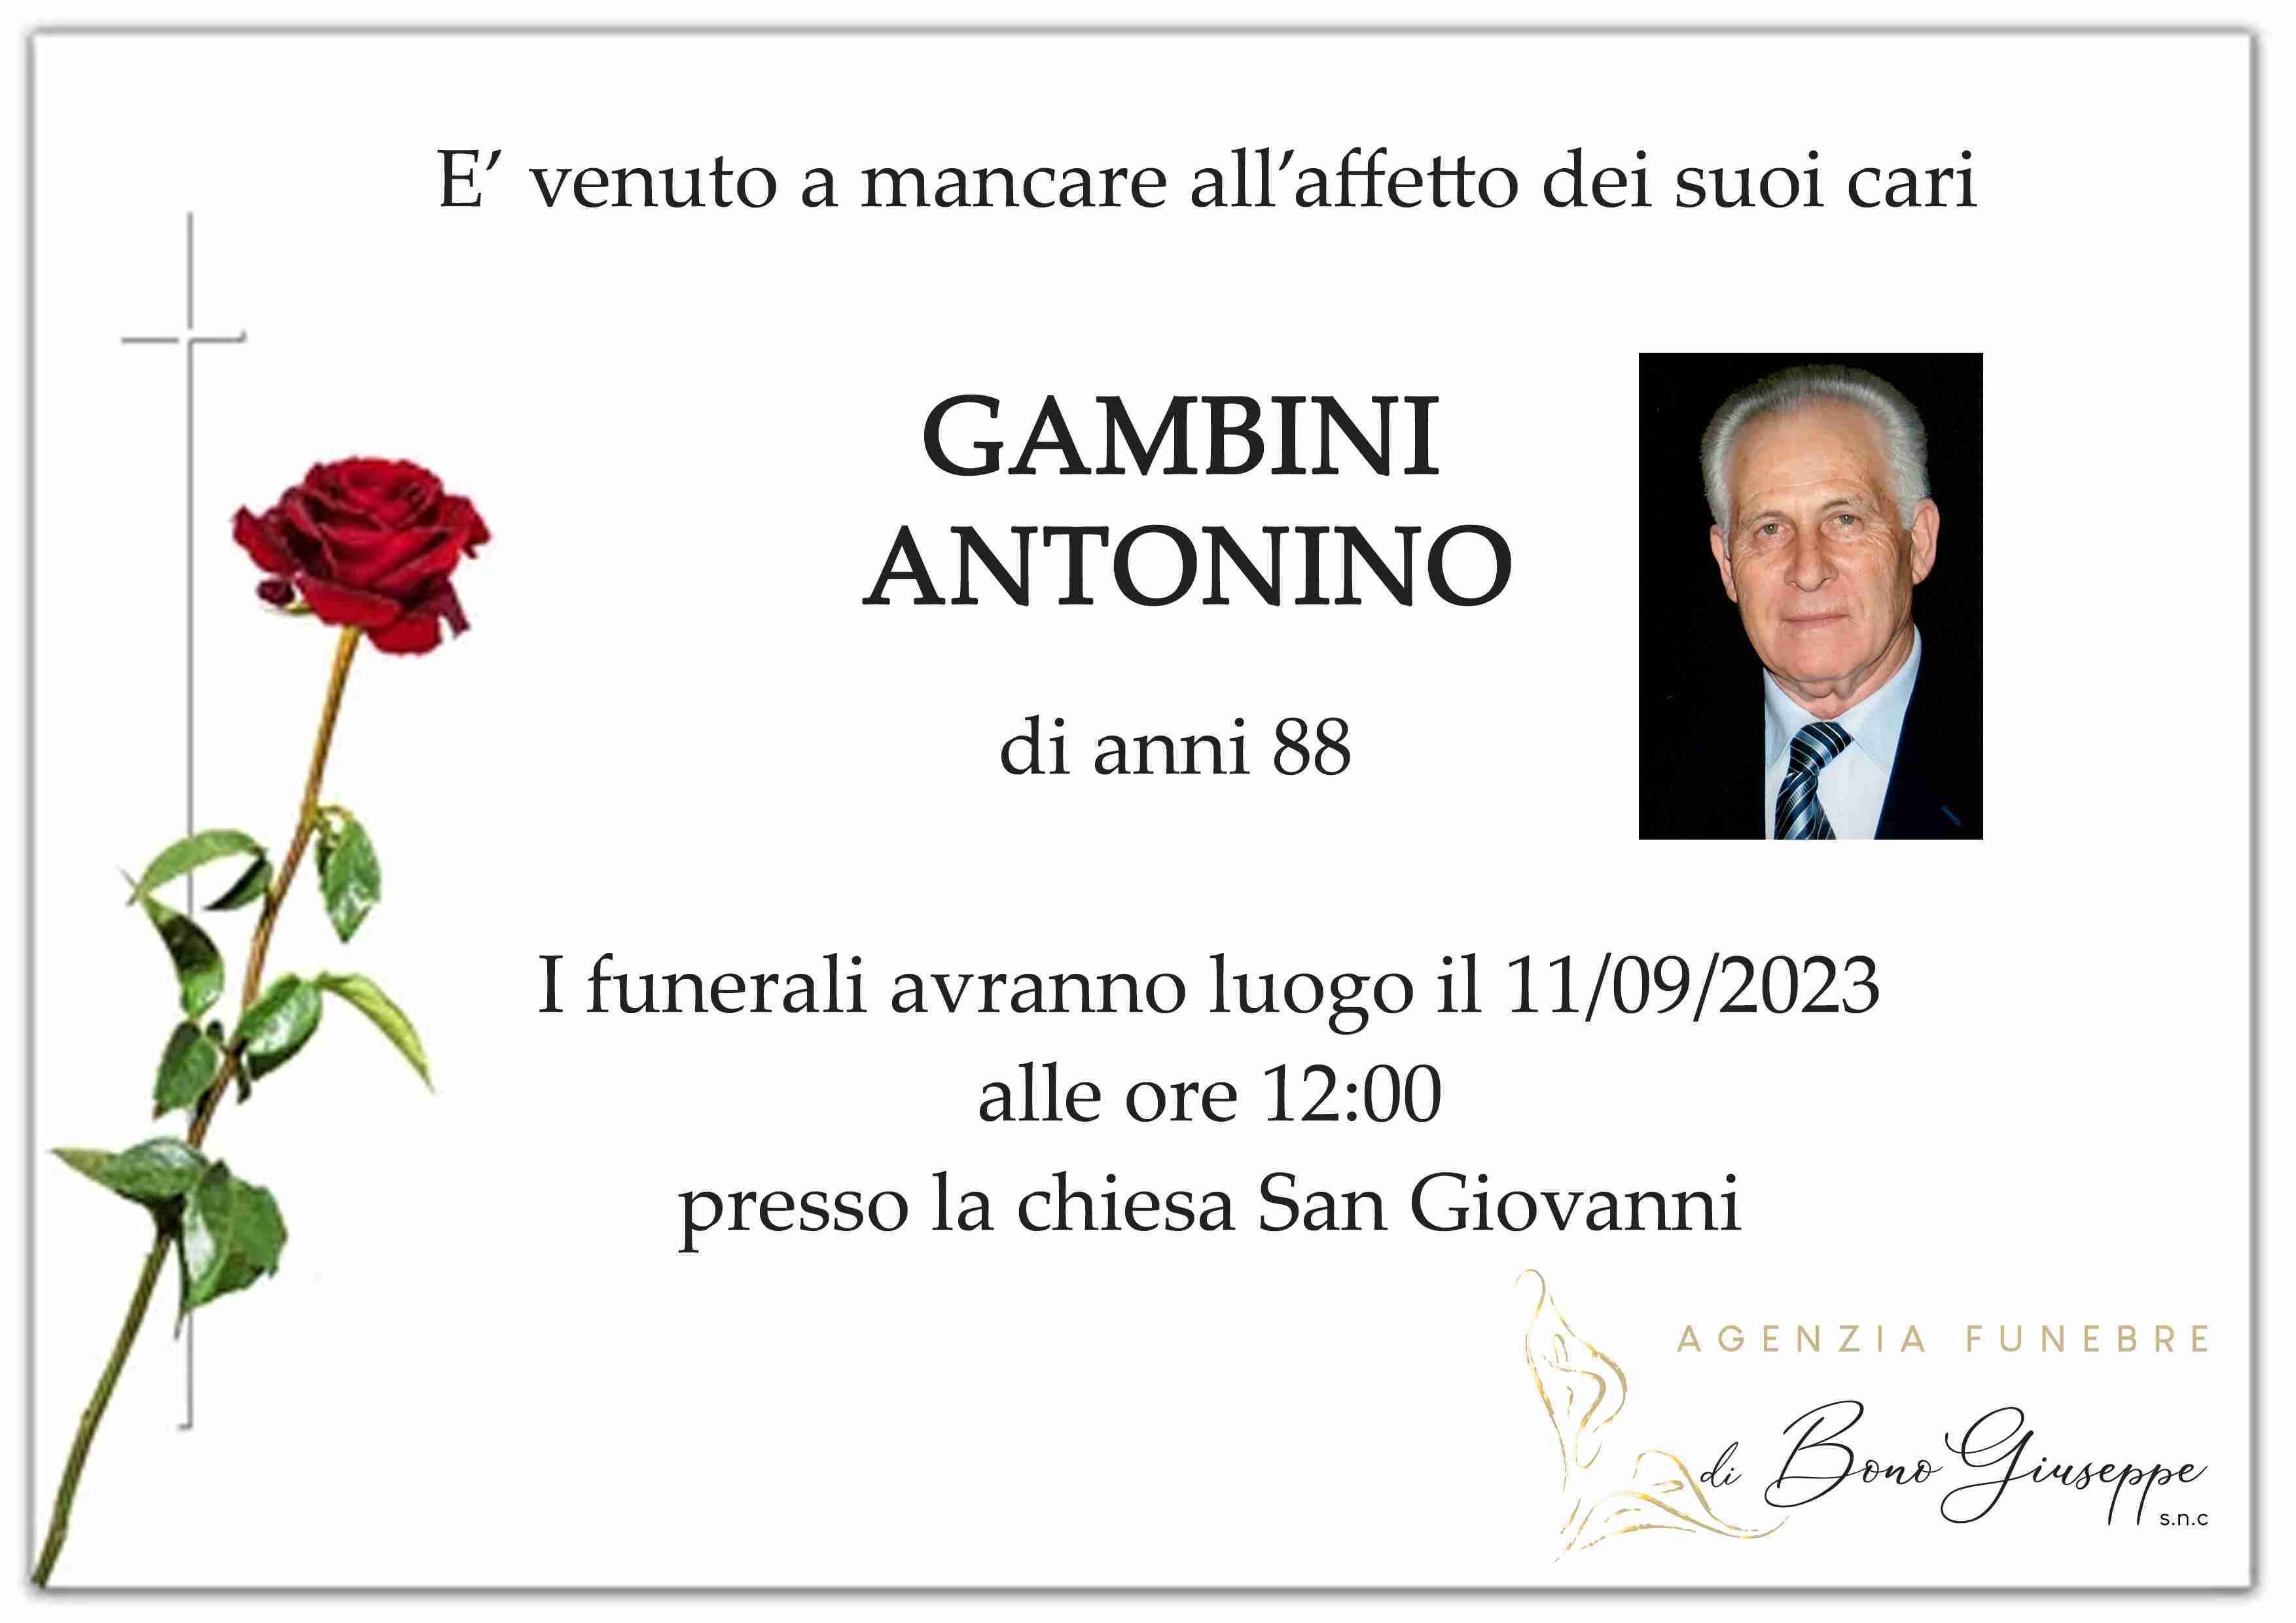 Antonino Gambini